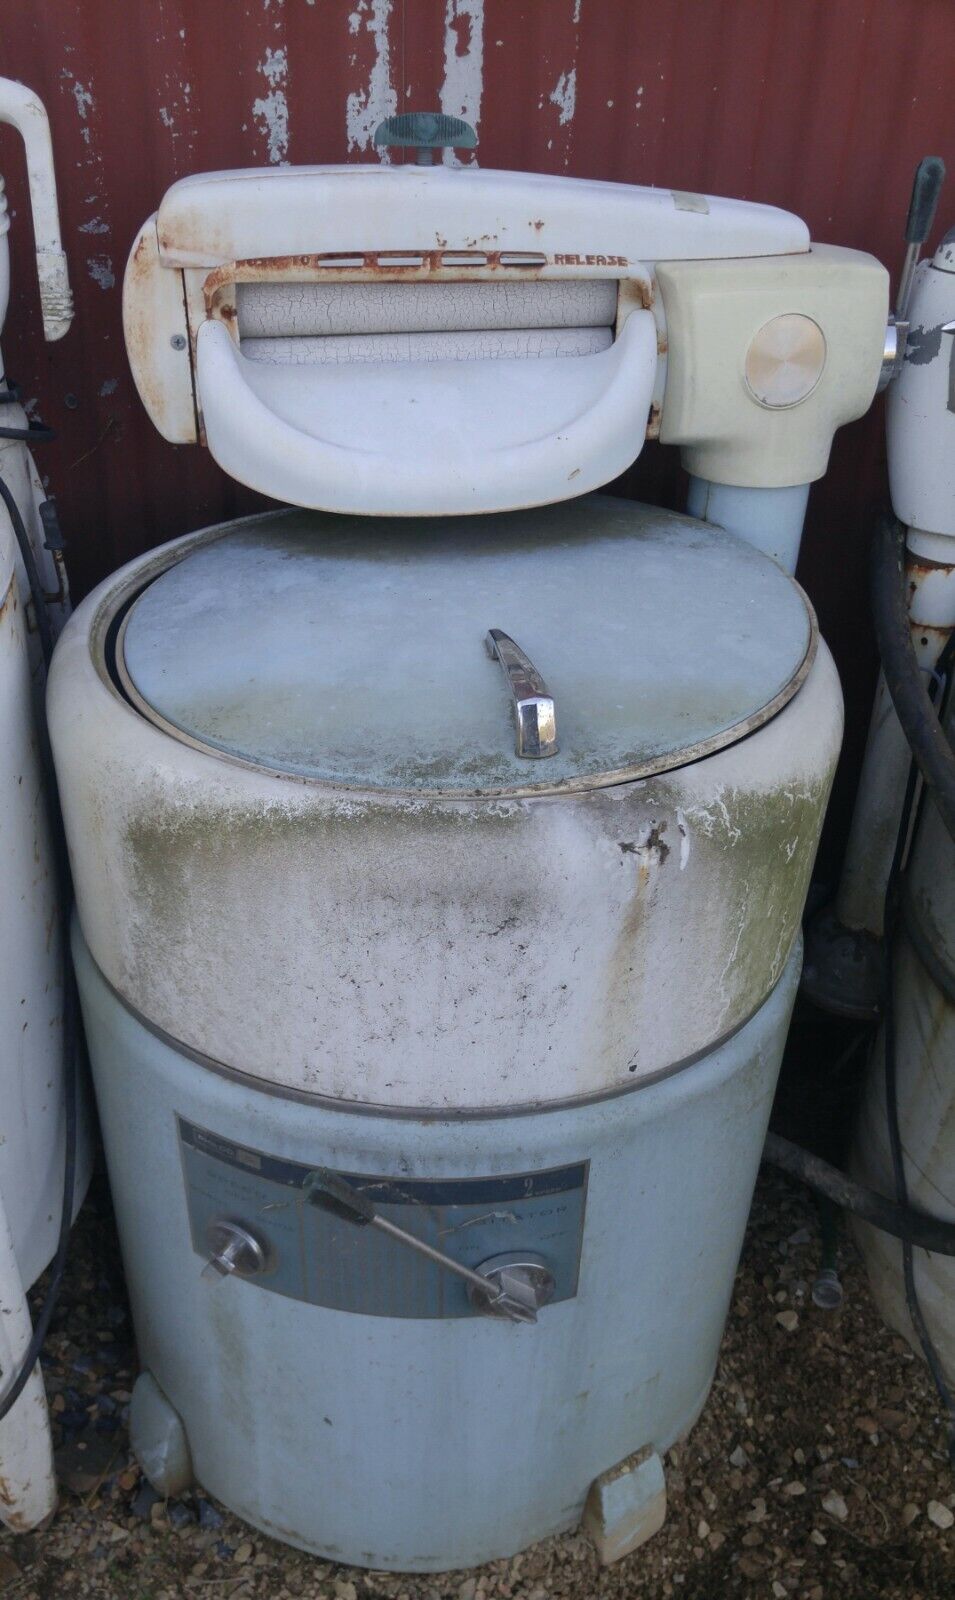 Collection Of 29 Antique Wringer Washing Machines Vintage Ringer Washer Machine Без бренда - фотография #10